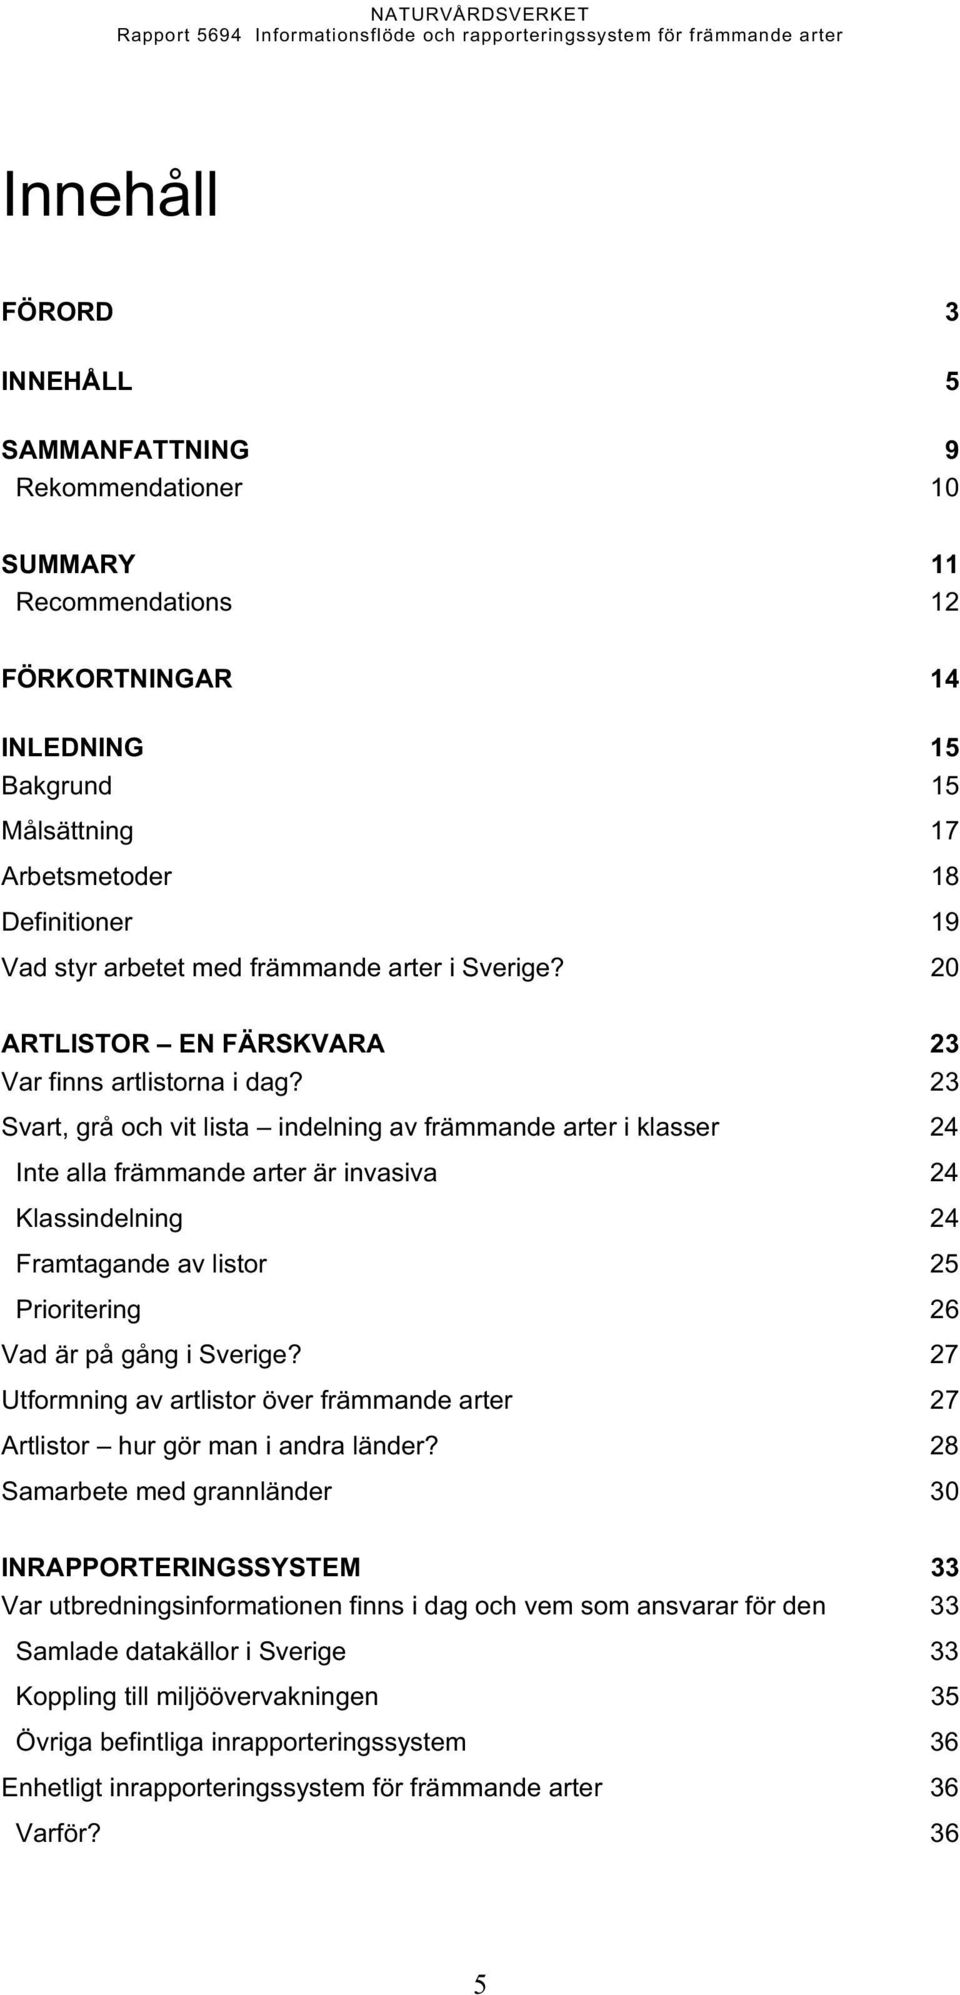 23 Svart, grå och vit lista indelning av främmande arter i klasser 24 Inte alla främmande arter är invasiva 24 Klassindelning 24 Framtagande av listor 25 Prioritering 26 Vad är på gång i Sverige?